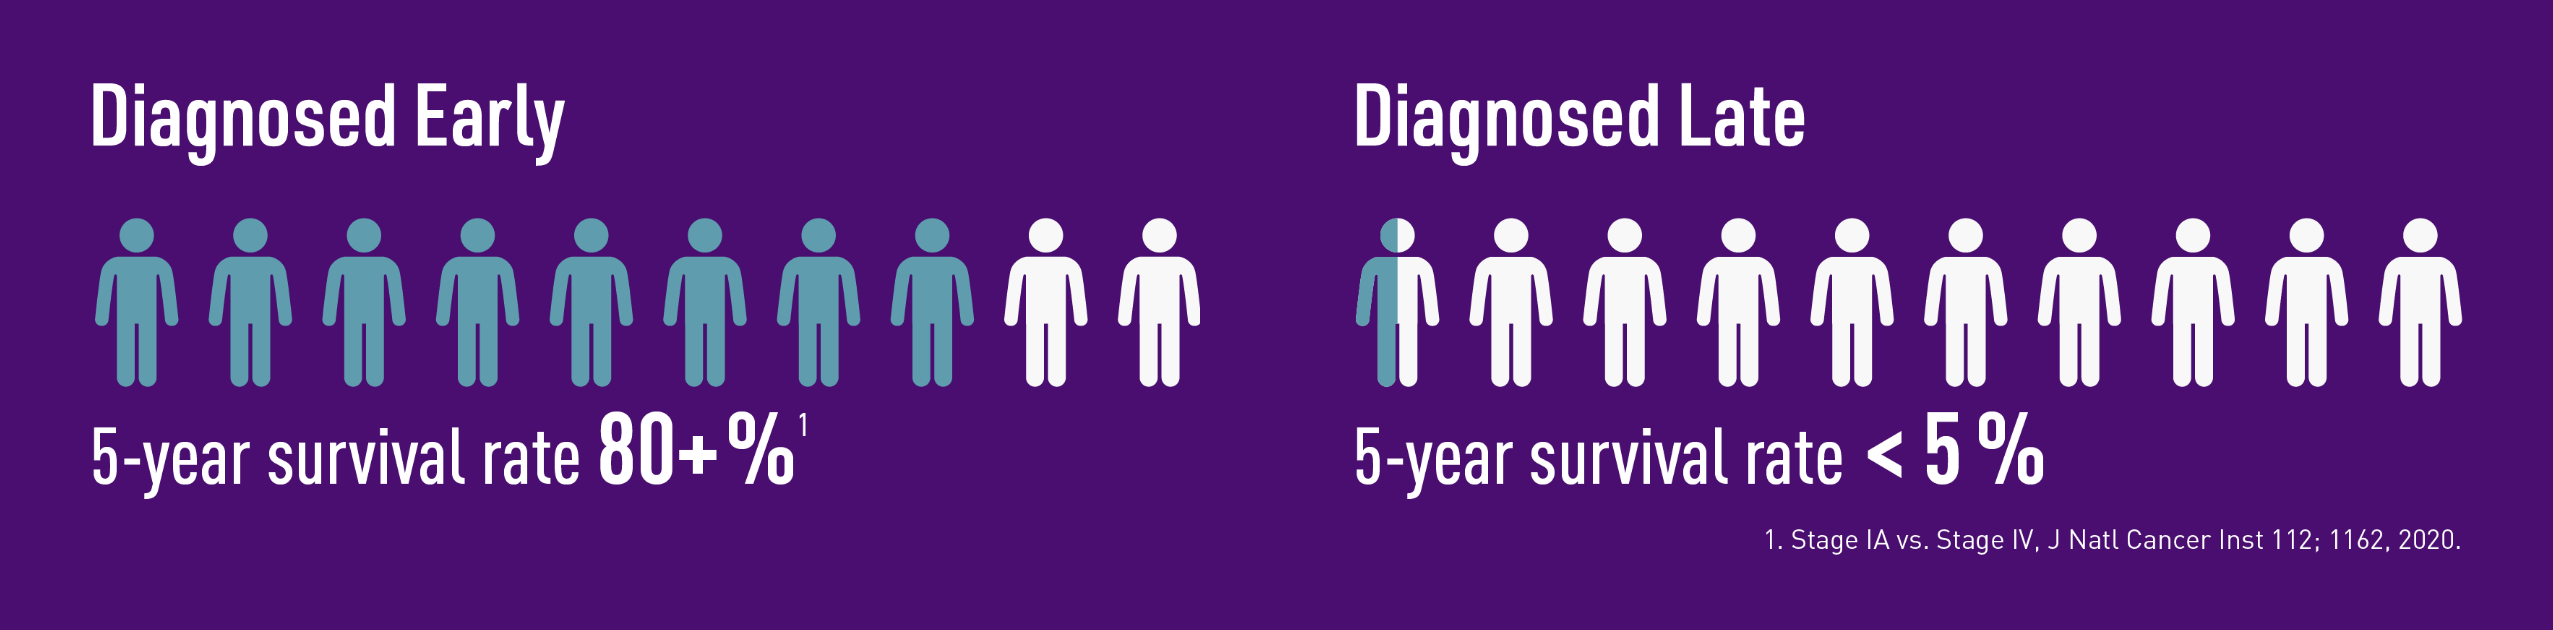 早期/晚期诊断:早期诊断，5年生存率超过80%，但晚期诊断，不到5%